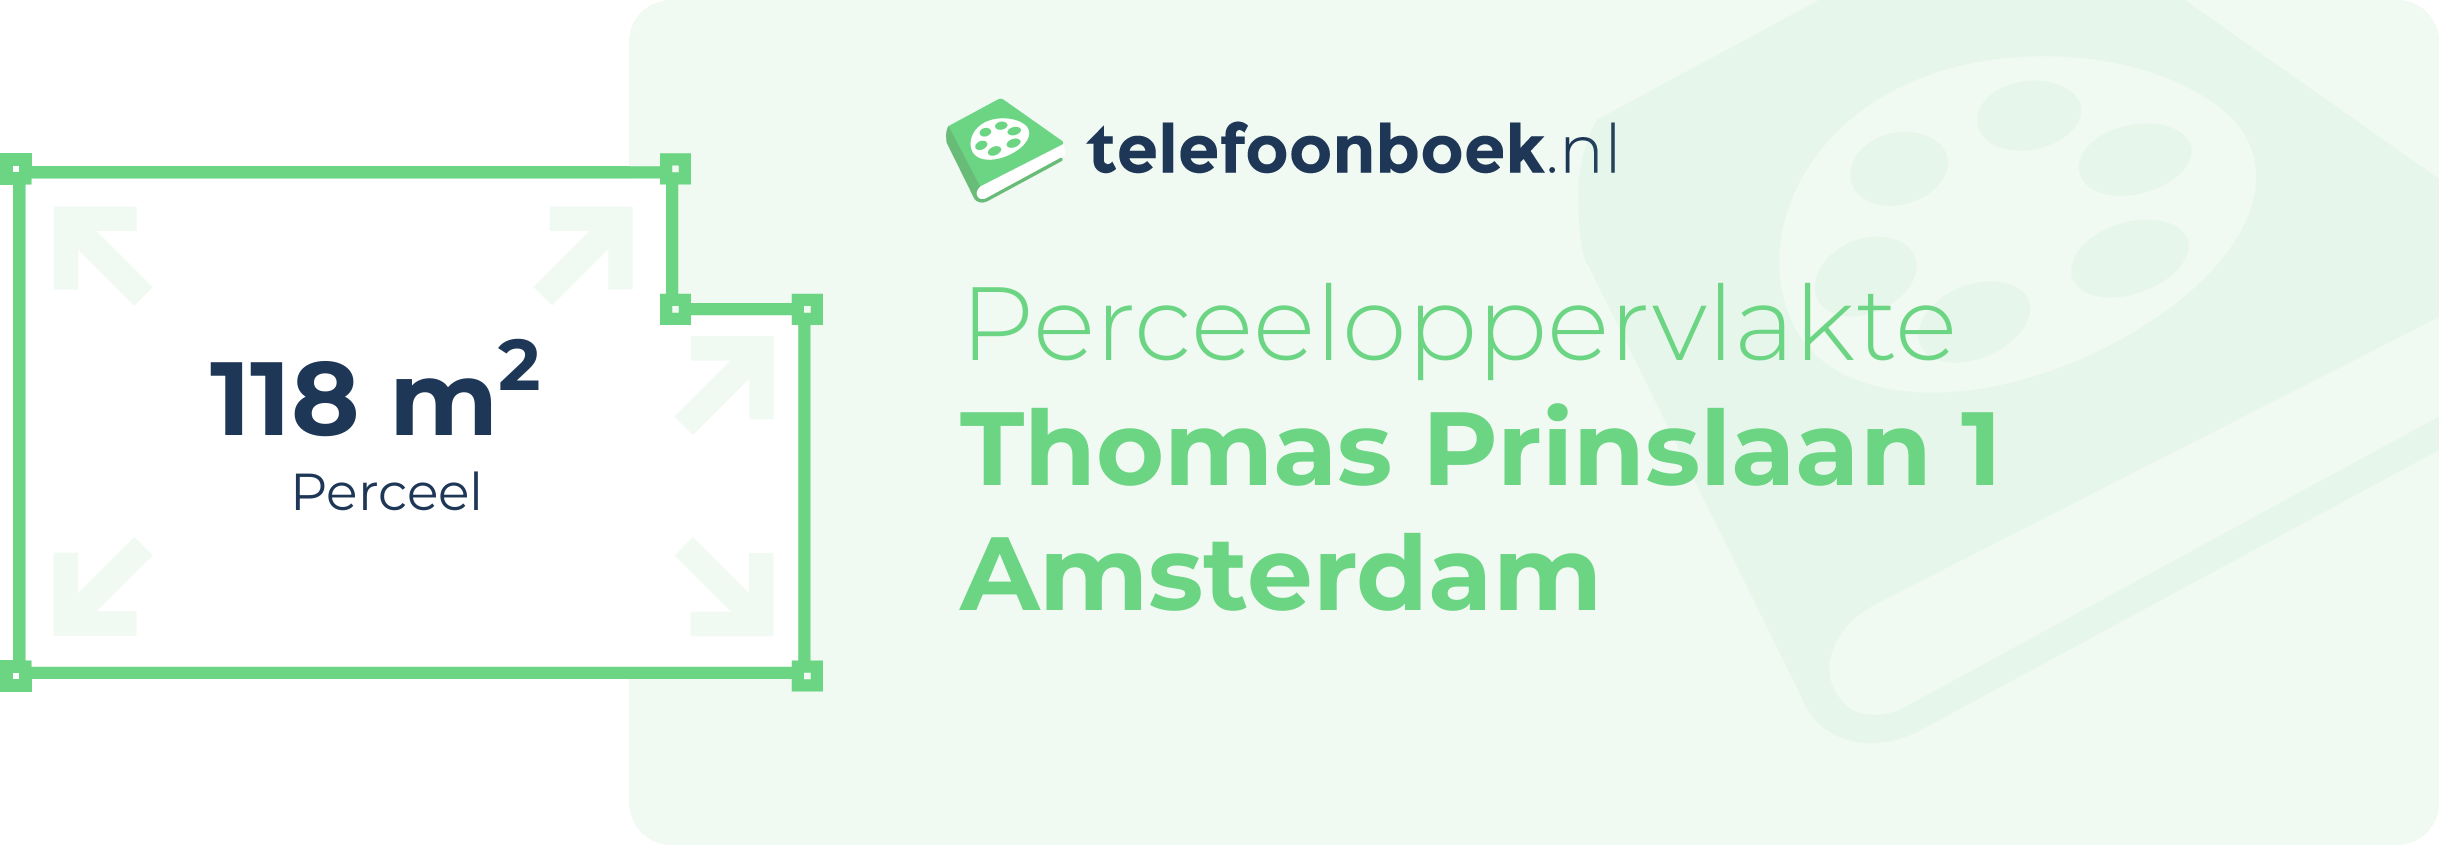 Perceeloppervlakte Thomas Prinslaan 1 Amsterdam